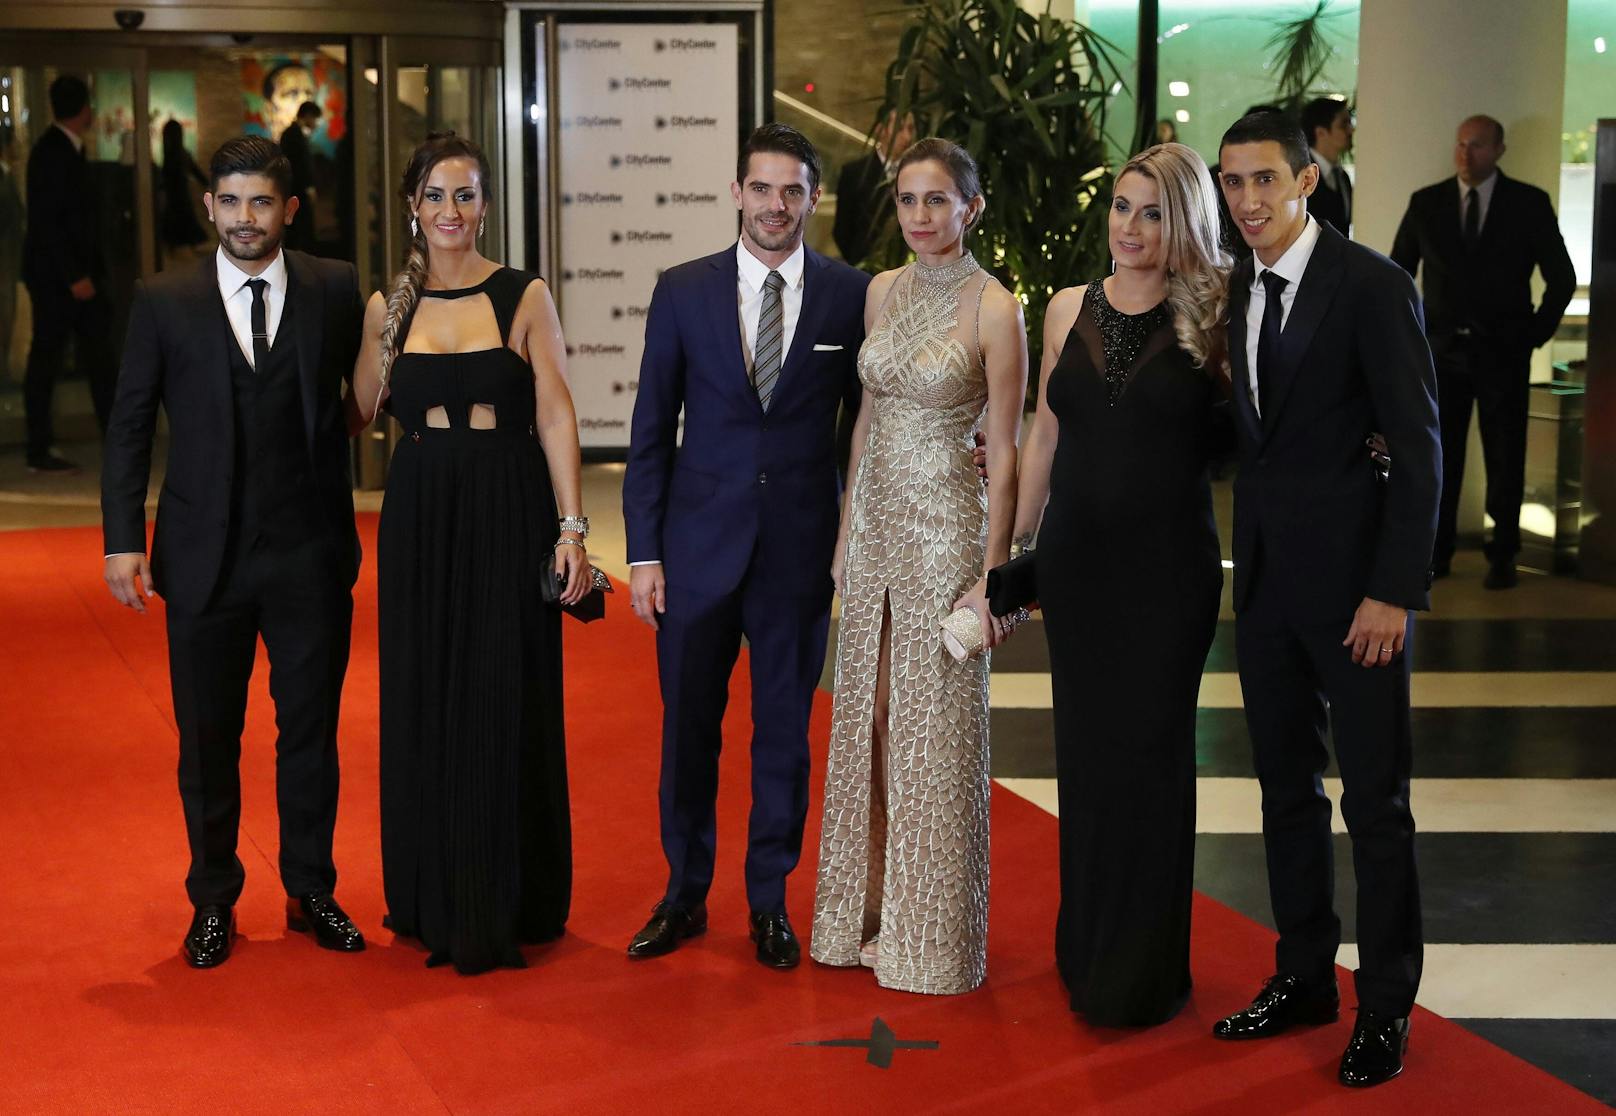 Gago und Dulko waren zusammen bei der Hochzeit von Lionel Messi und Antonela Rocuzzo. Sie sind das Paar in der Mitte. Links Ever Banega mit seiner Ehefrau, rechts Angel Di Maria mit Gattin.